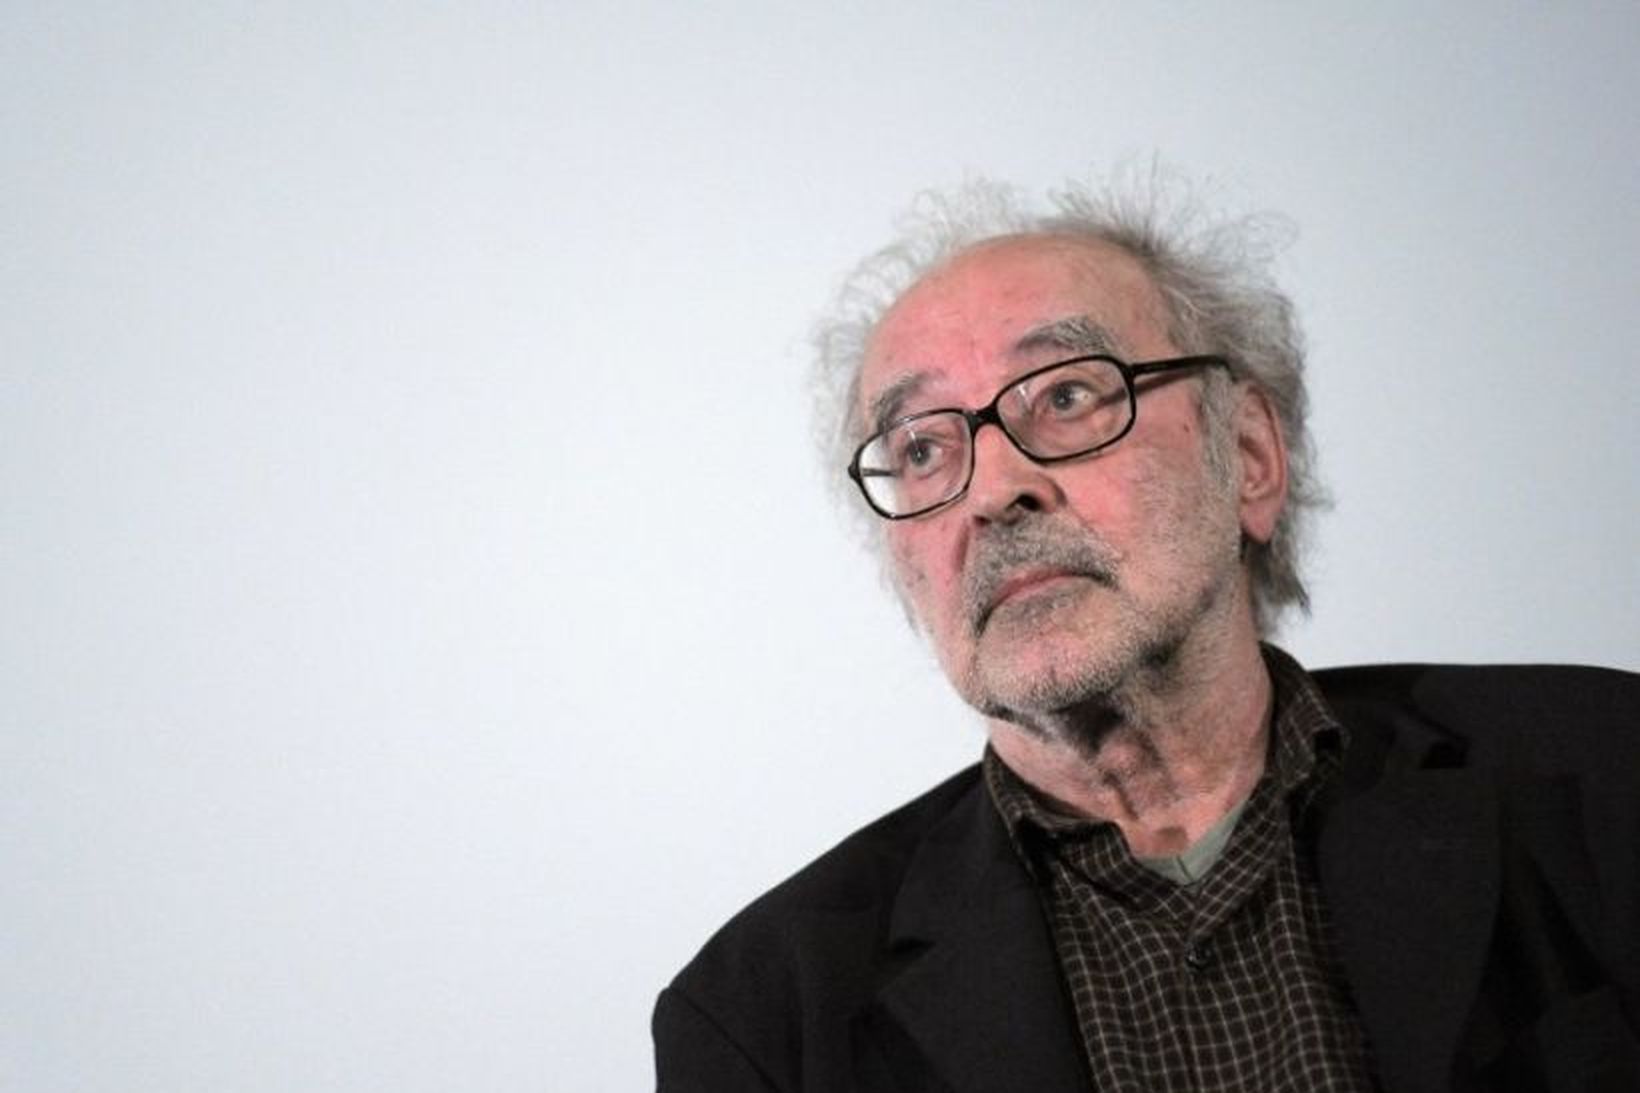 Jean-Luc Godard er látinn 91 árs að aldri.